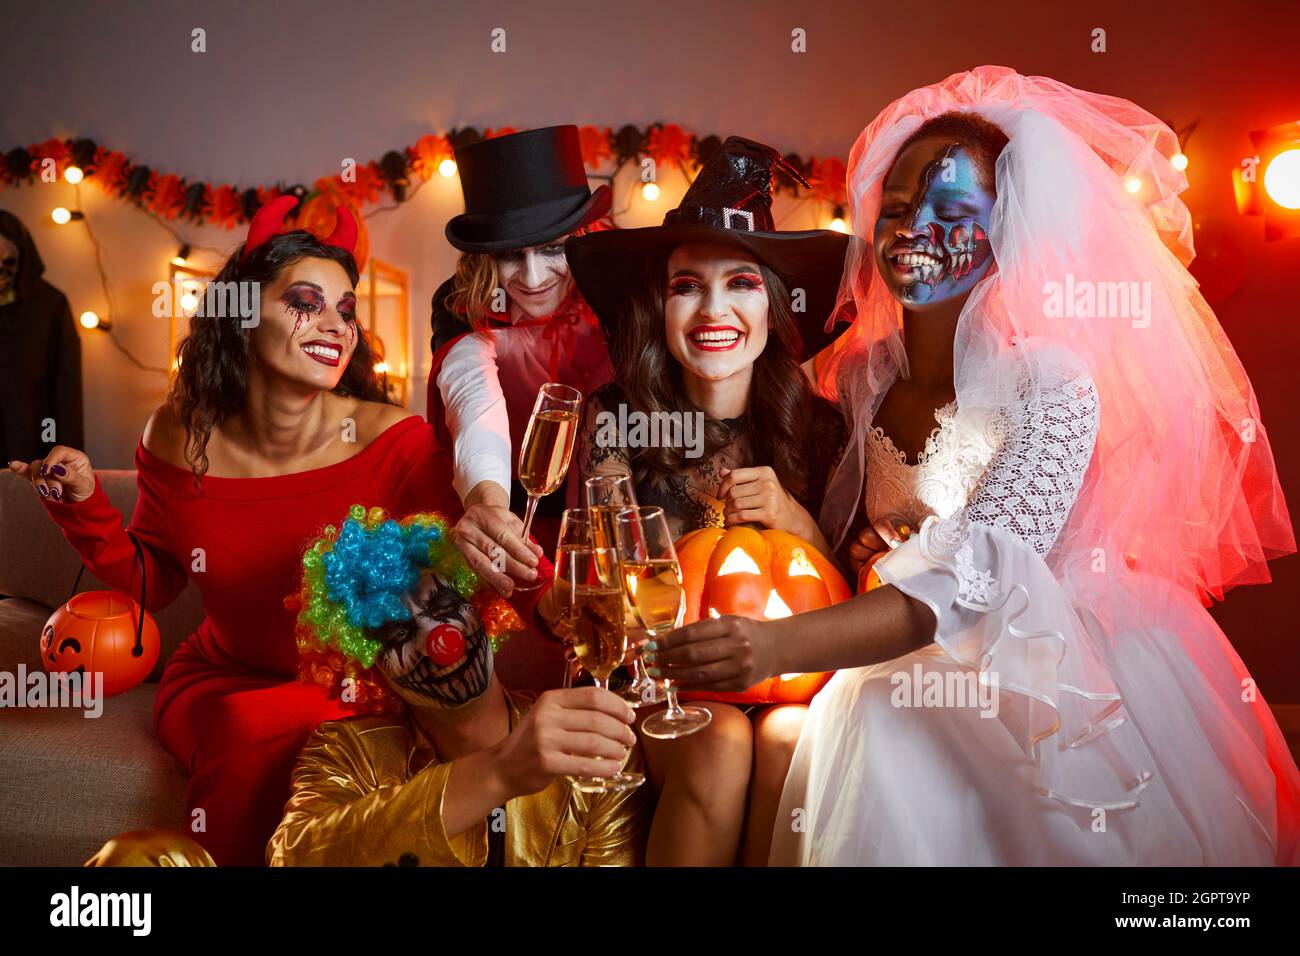 Groupe diversifié de jeunes amis heureux qui boivent et s'amusent à une fête d'Halloween Banque D'Images